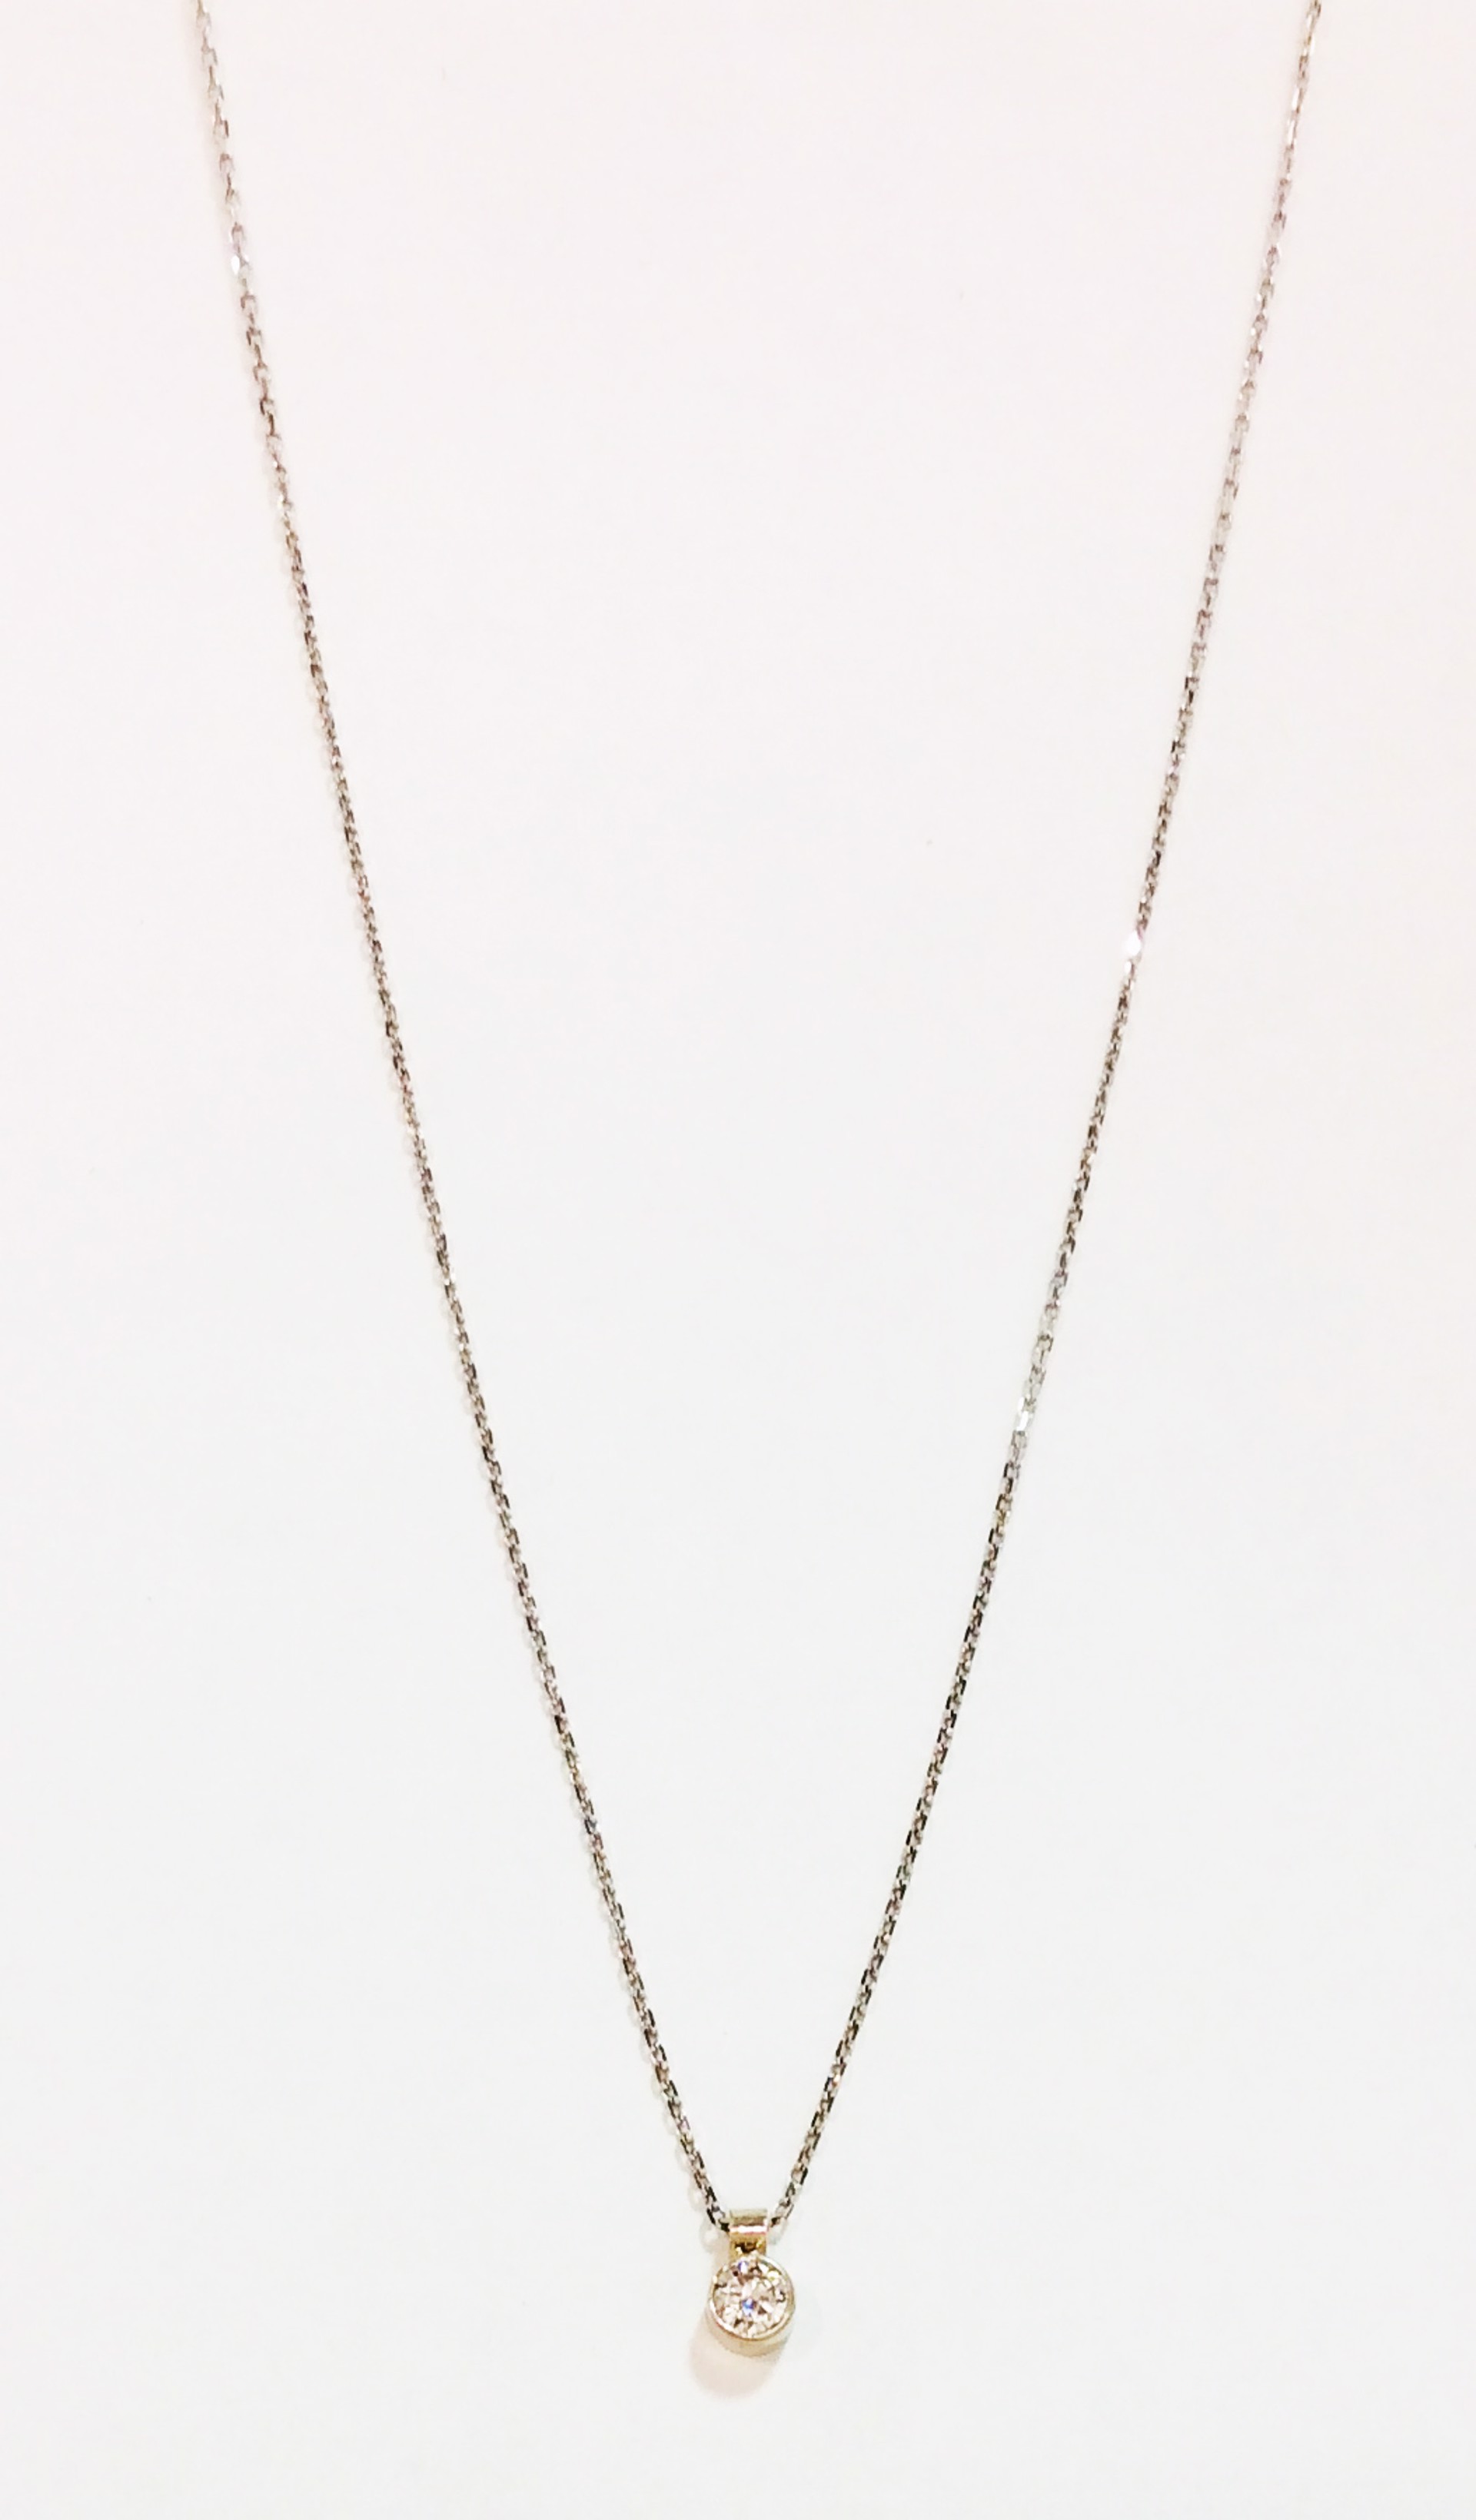 Diamond Necklace by D'ETTE DELFORGE